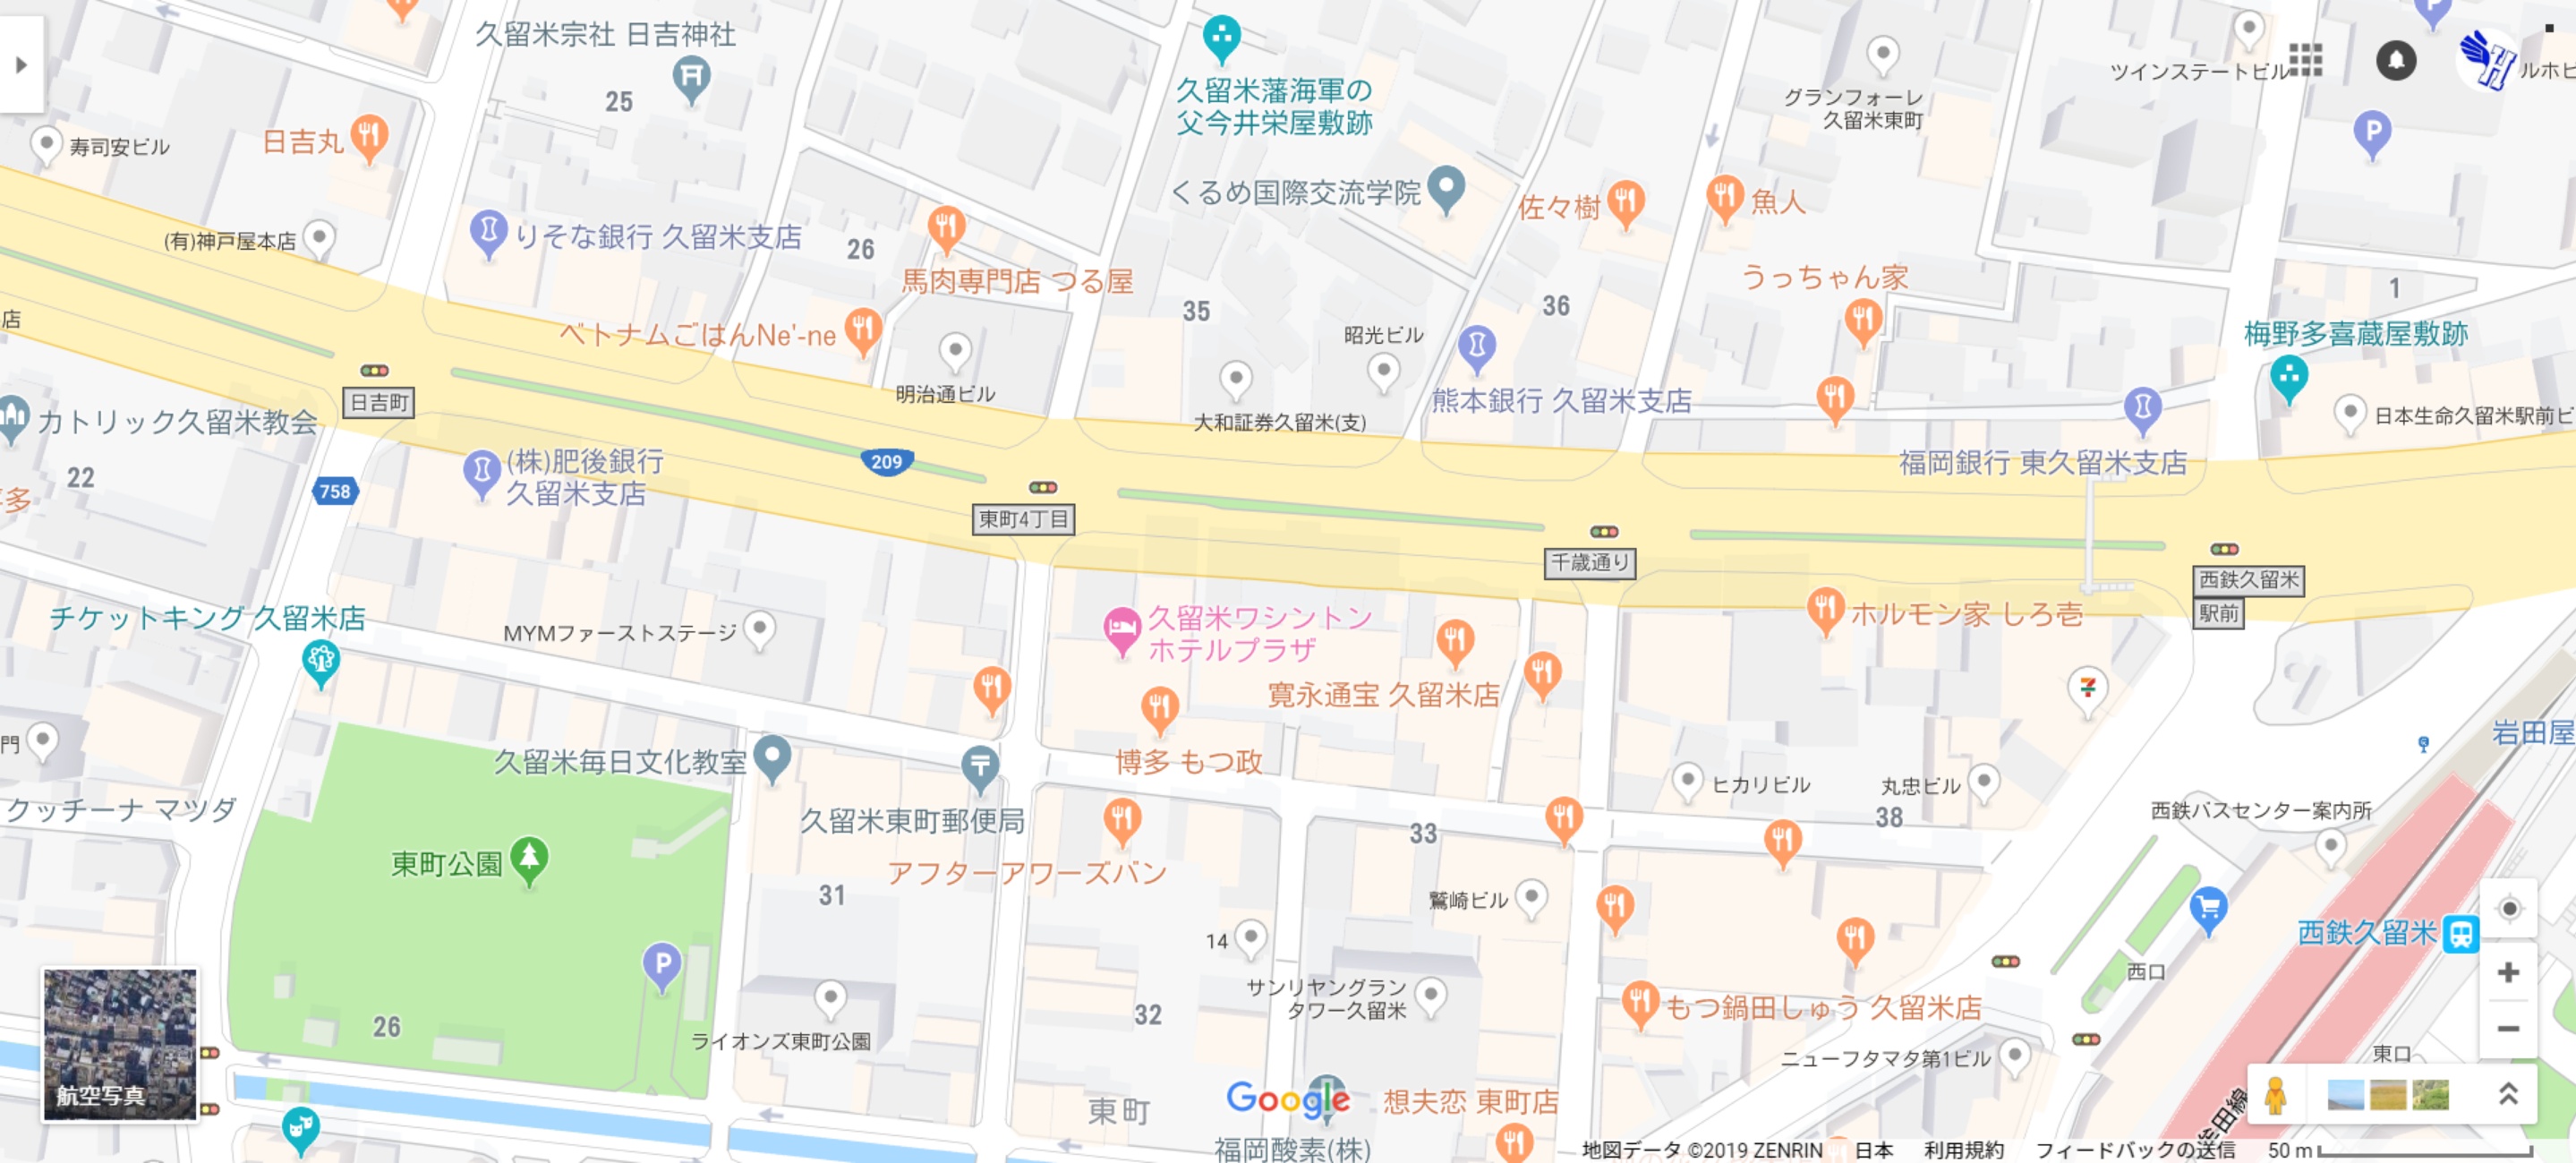 日本語表記の久留米市街地地図